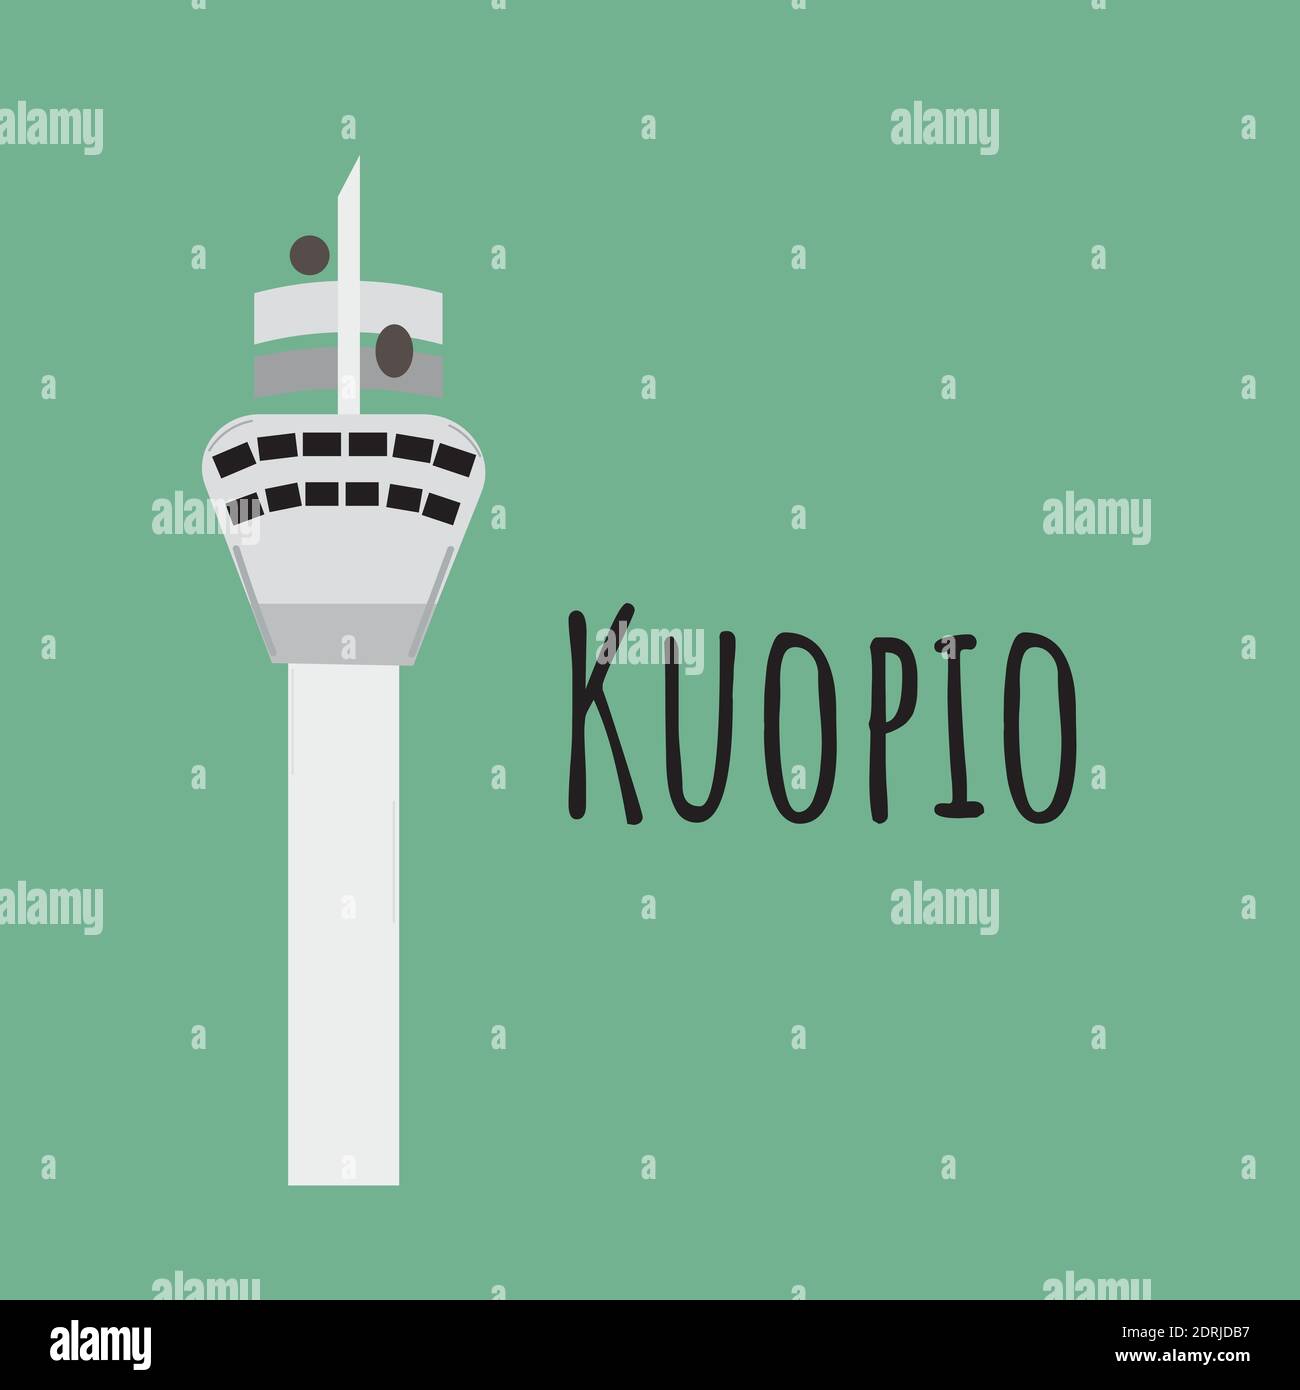 Vue aérienne de la tour de Puijo. Tour d'observation au sommet de la colline de Puijo à Kuopio. Illustration vectorielle colorée isolée sur fond blanc Illustration de Vecteur